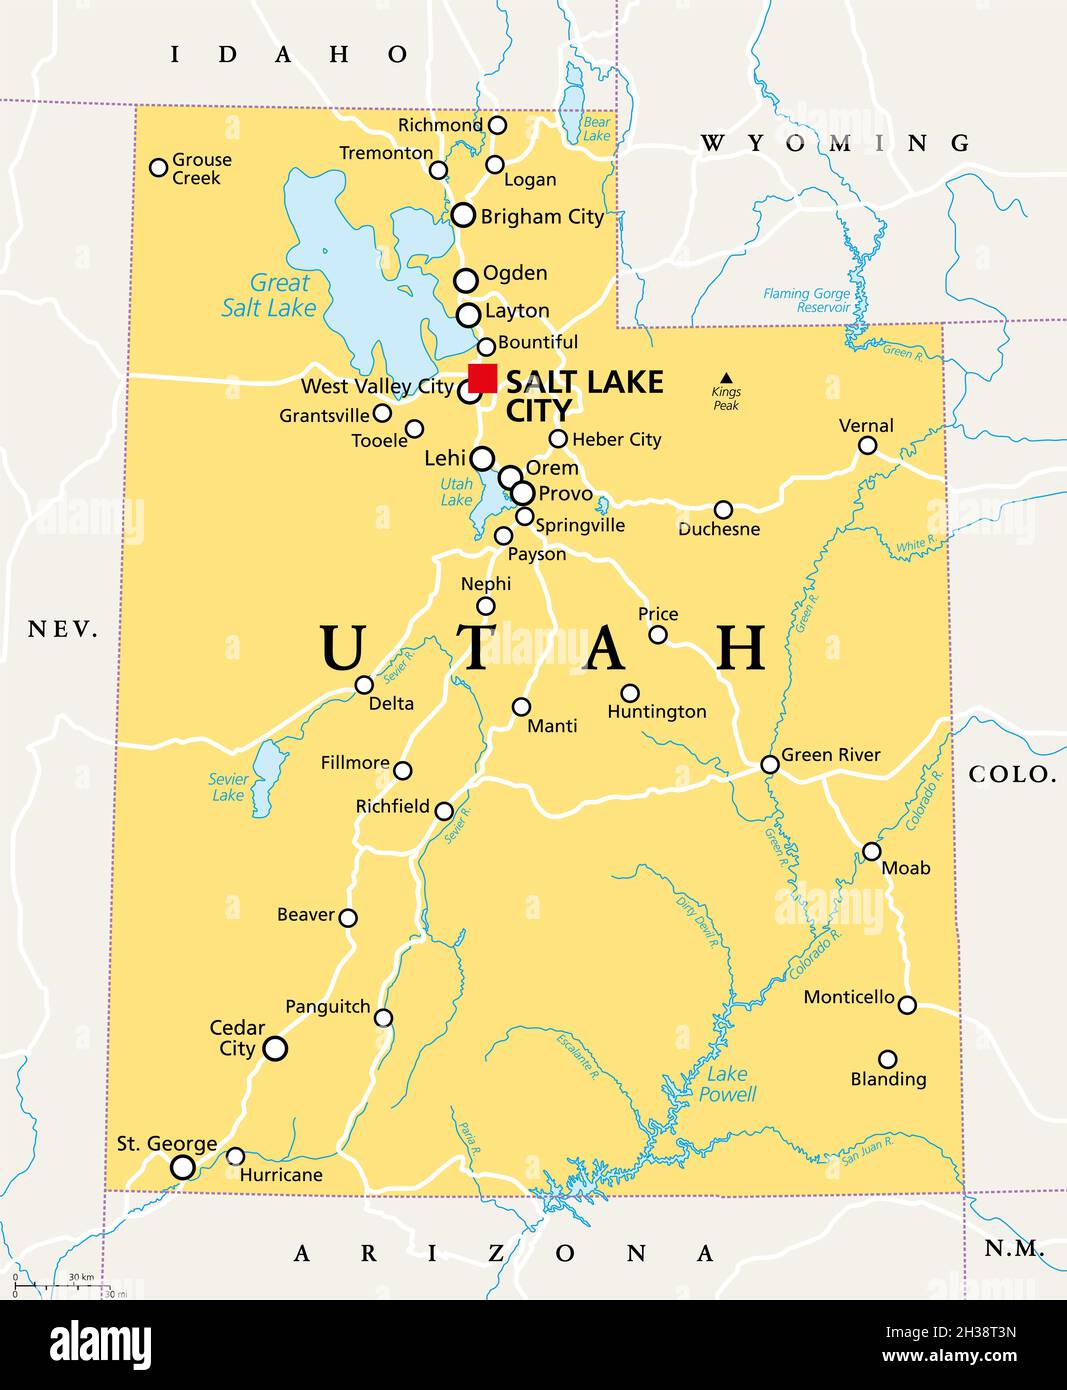 Utah, Utah, politische Karte, mit der Hauptstadt Salt Lake City. Staat in der Unterregion Mountain West der westlichen Vereinigten Staaten von Amerika. Beehive State. Stockfoto